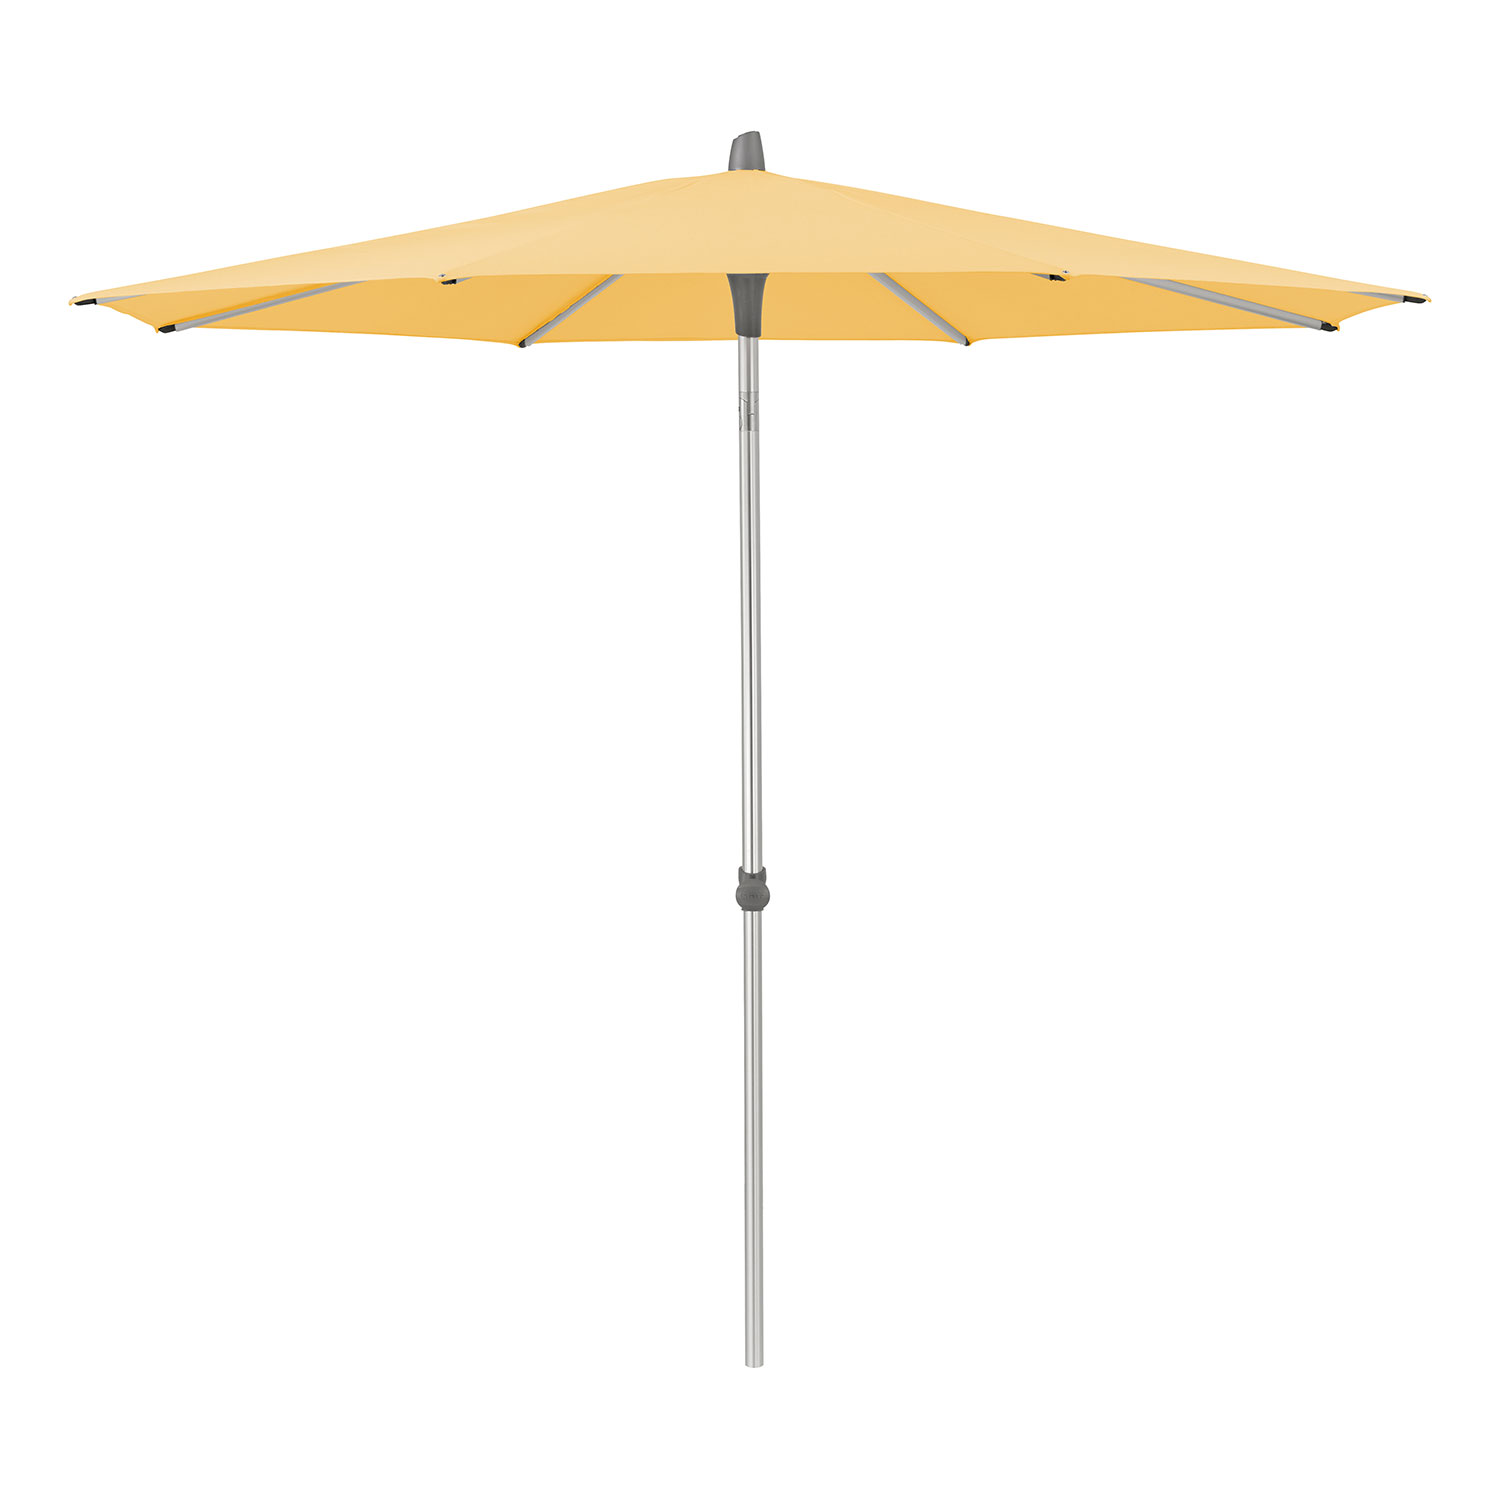 Glatz Alu-smart parasoll 220 cm kat.4 438 straw